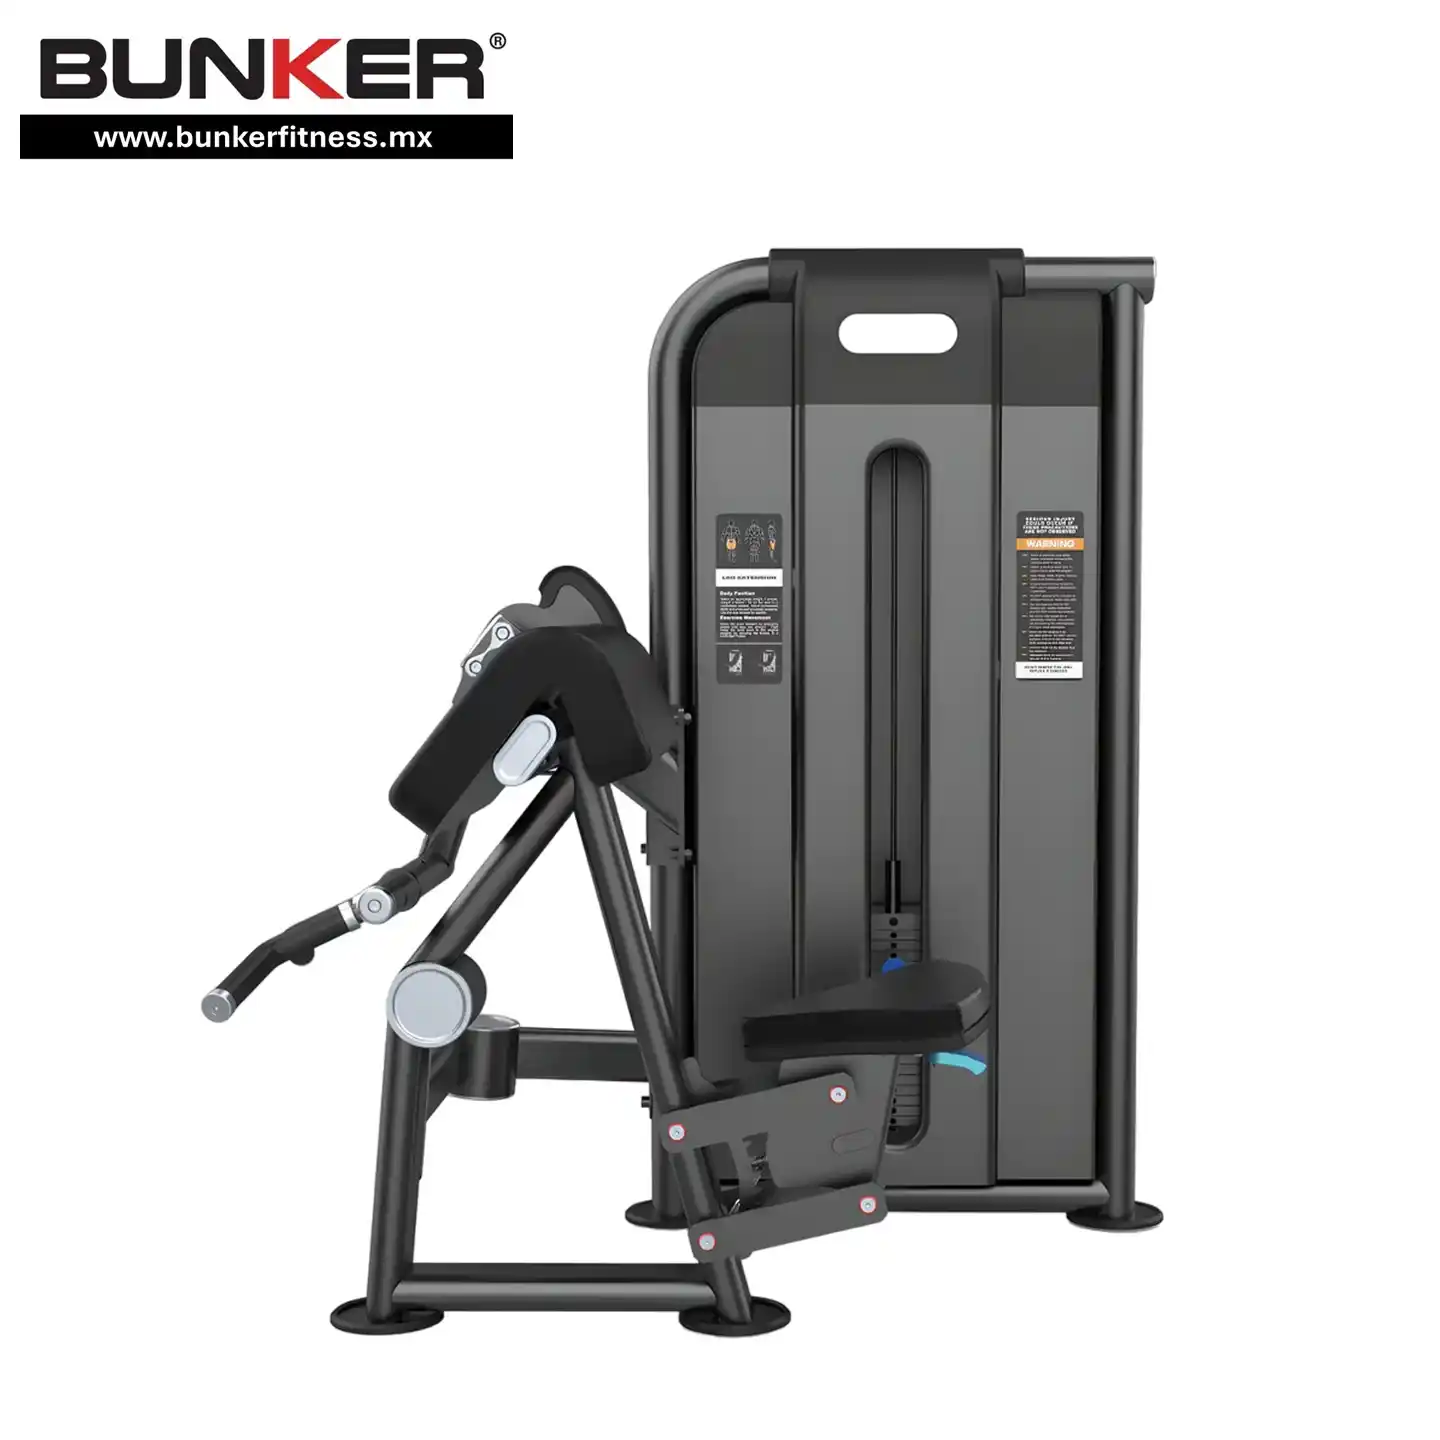 aparato de bicep y tricep falcon fitness con peso integrado bunker gym bunker fitness